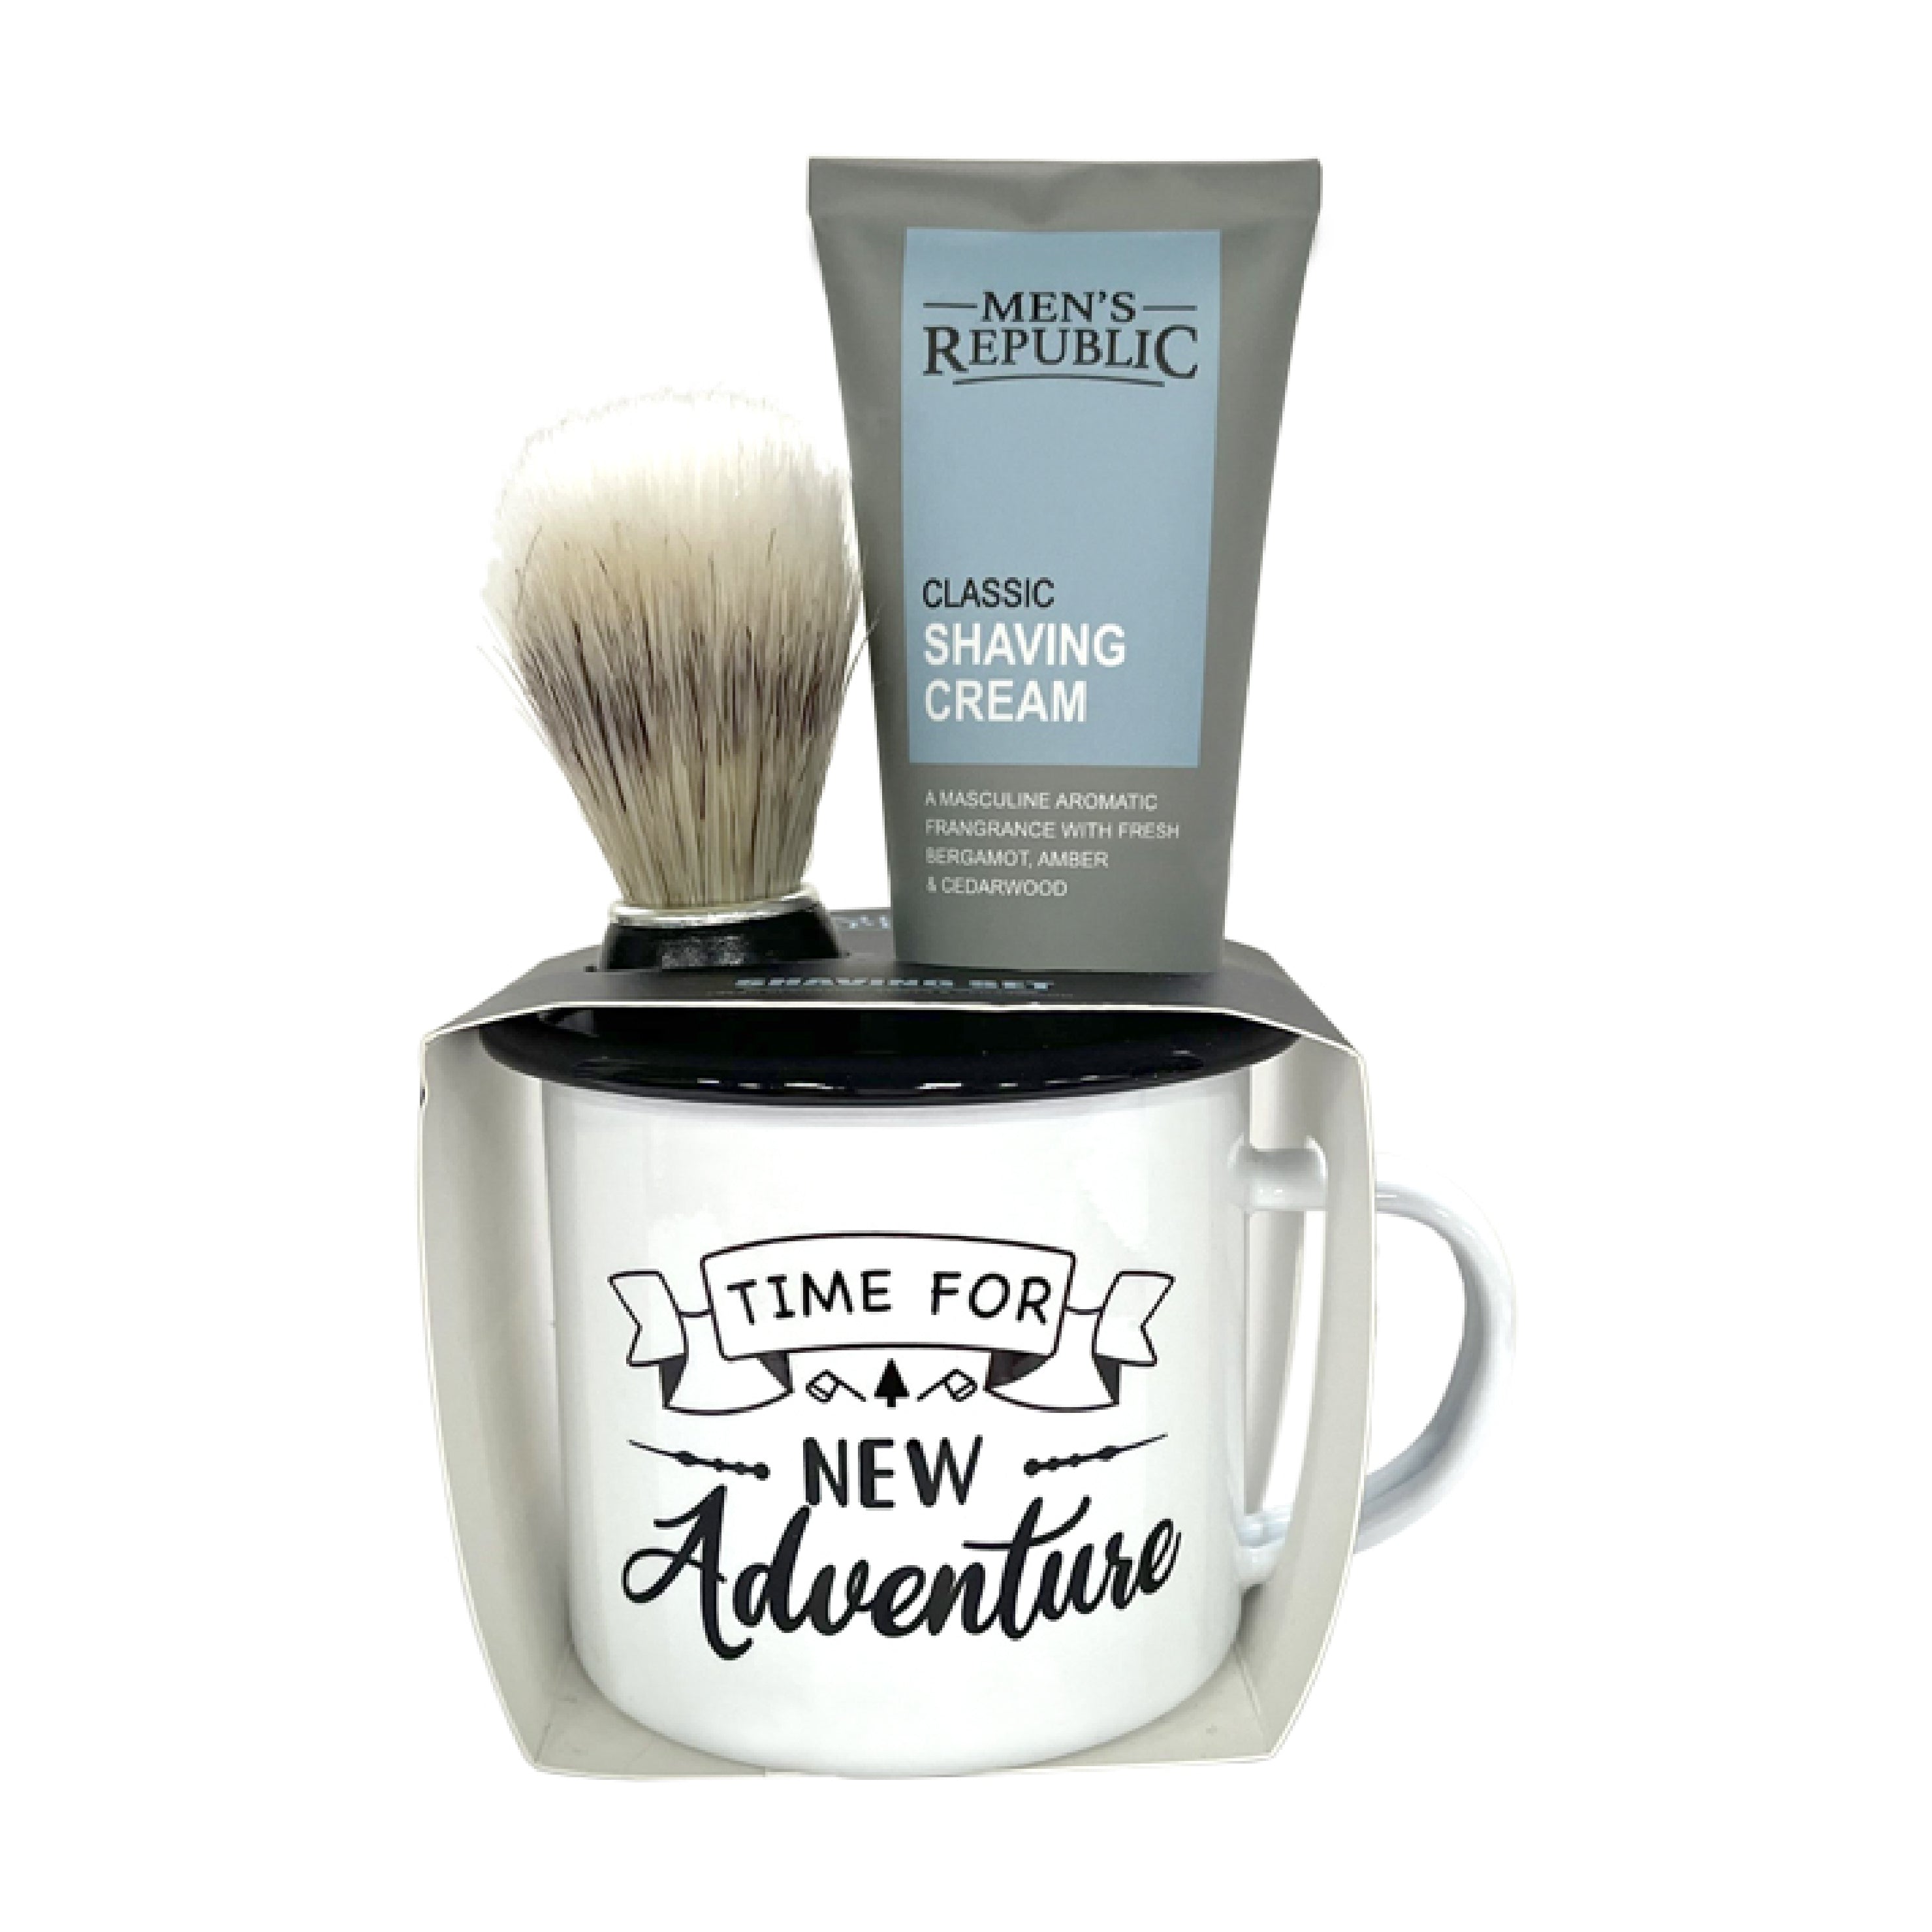 Mens Republic - 'Time For a New Adventure' - Mug Set & Shaving Cream